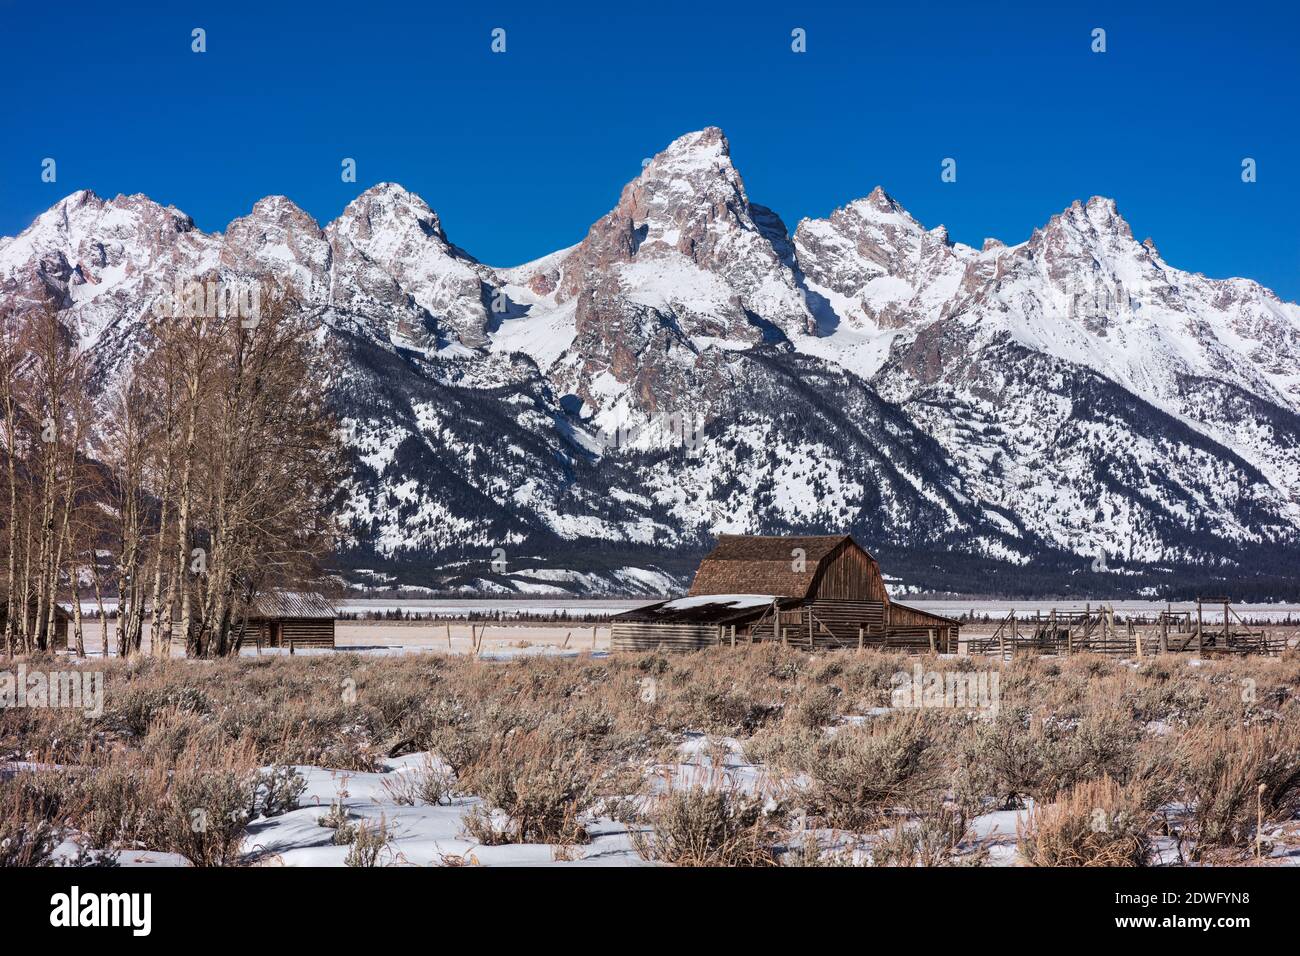 The Teton Mountains and John Moulton Barn on Mormon Row in Grand Teton National Park, Wyoming Stock Photo